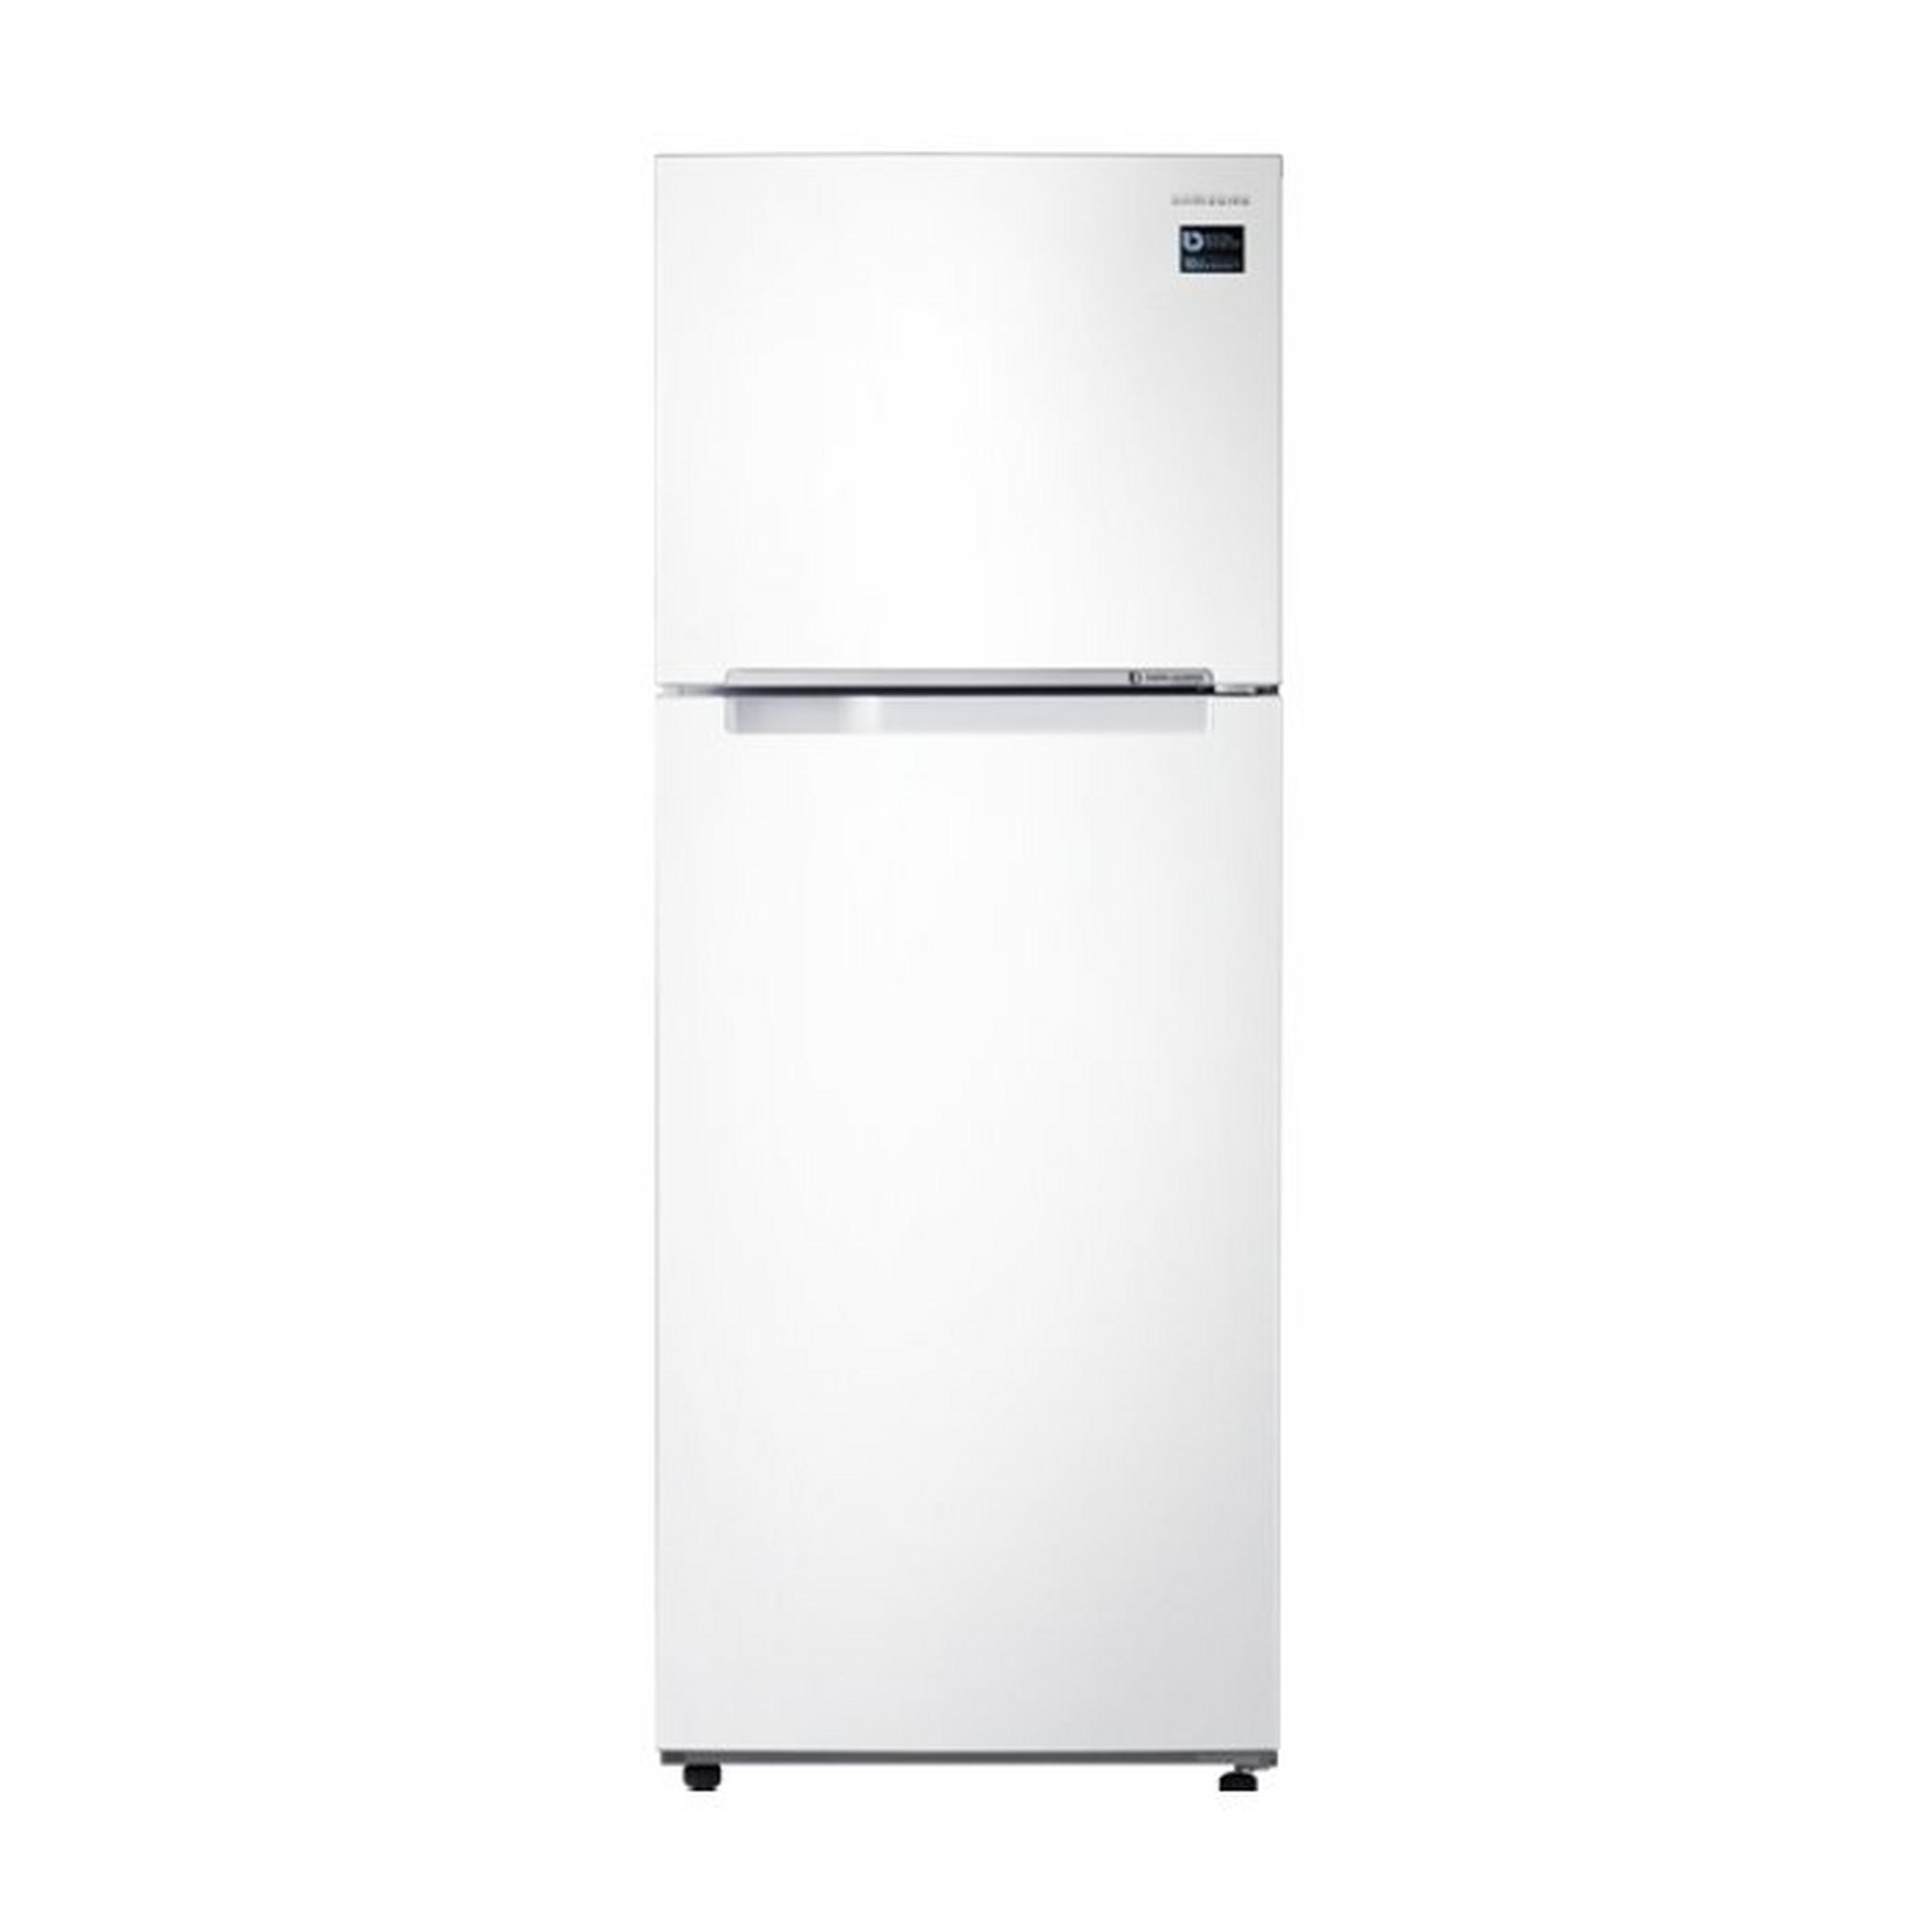 Samsung 15.9 CFT. Top Mount Refrigerator - White (RT45K5000WW)